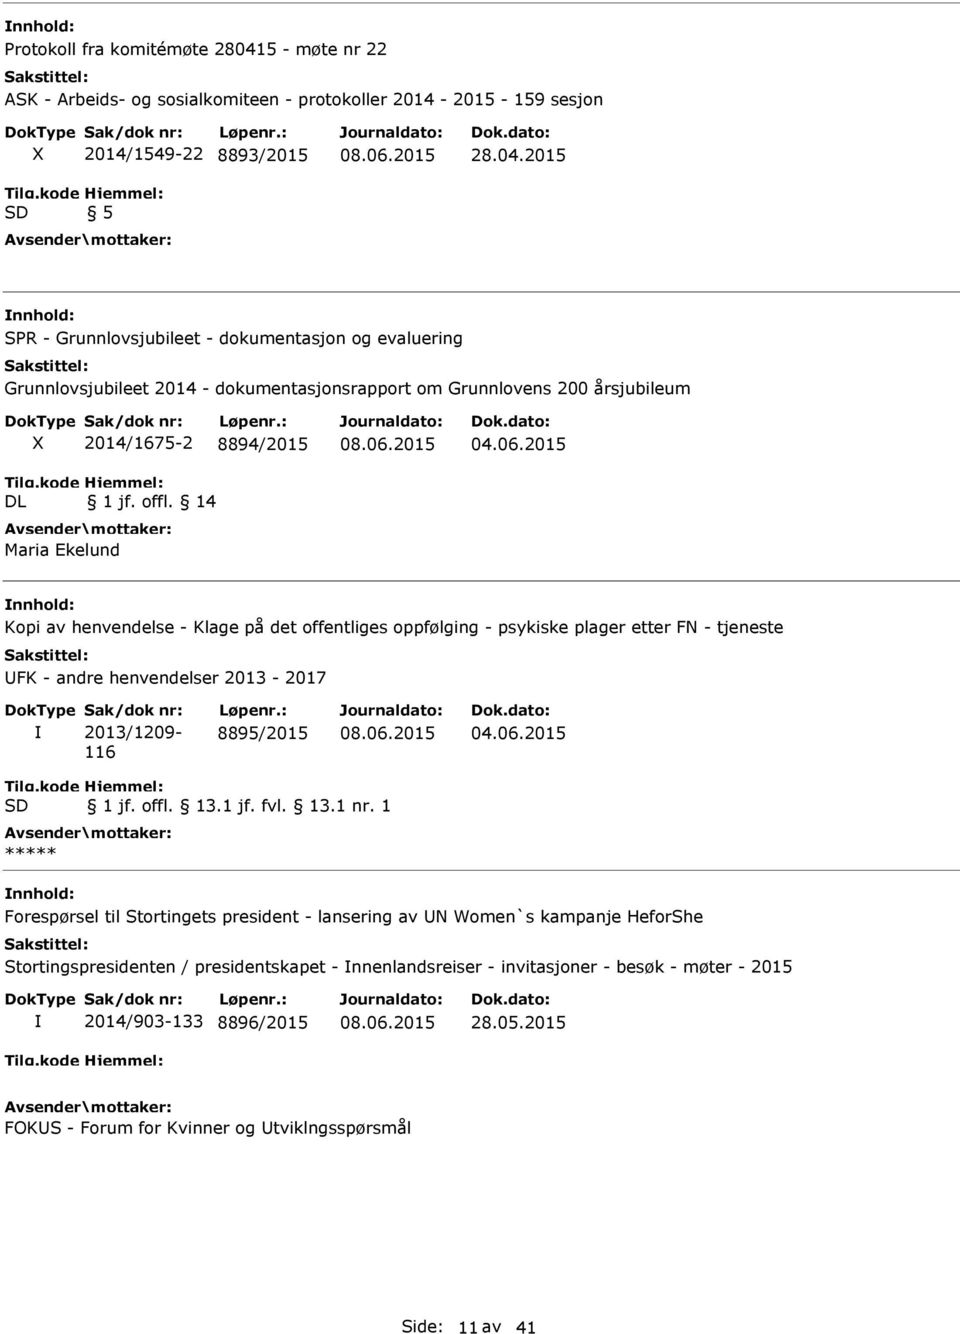 2015 nnhold: SPR - Grunnlovsjubileet - dokumentasjon og evaluering Grunnlovsjubileet 2014 - dokumentasjonsrapport om Grunnlovens 200 årsjubileum DL 2014/1675-2 8894/2015 1 jf. offl.